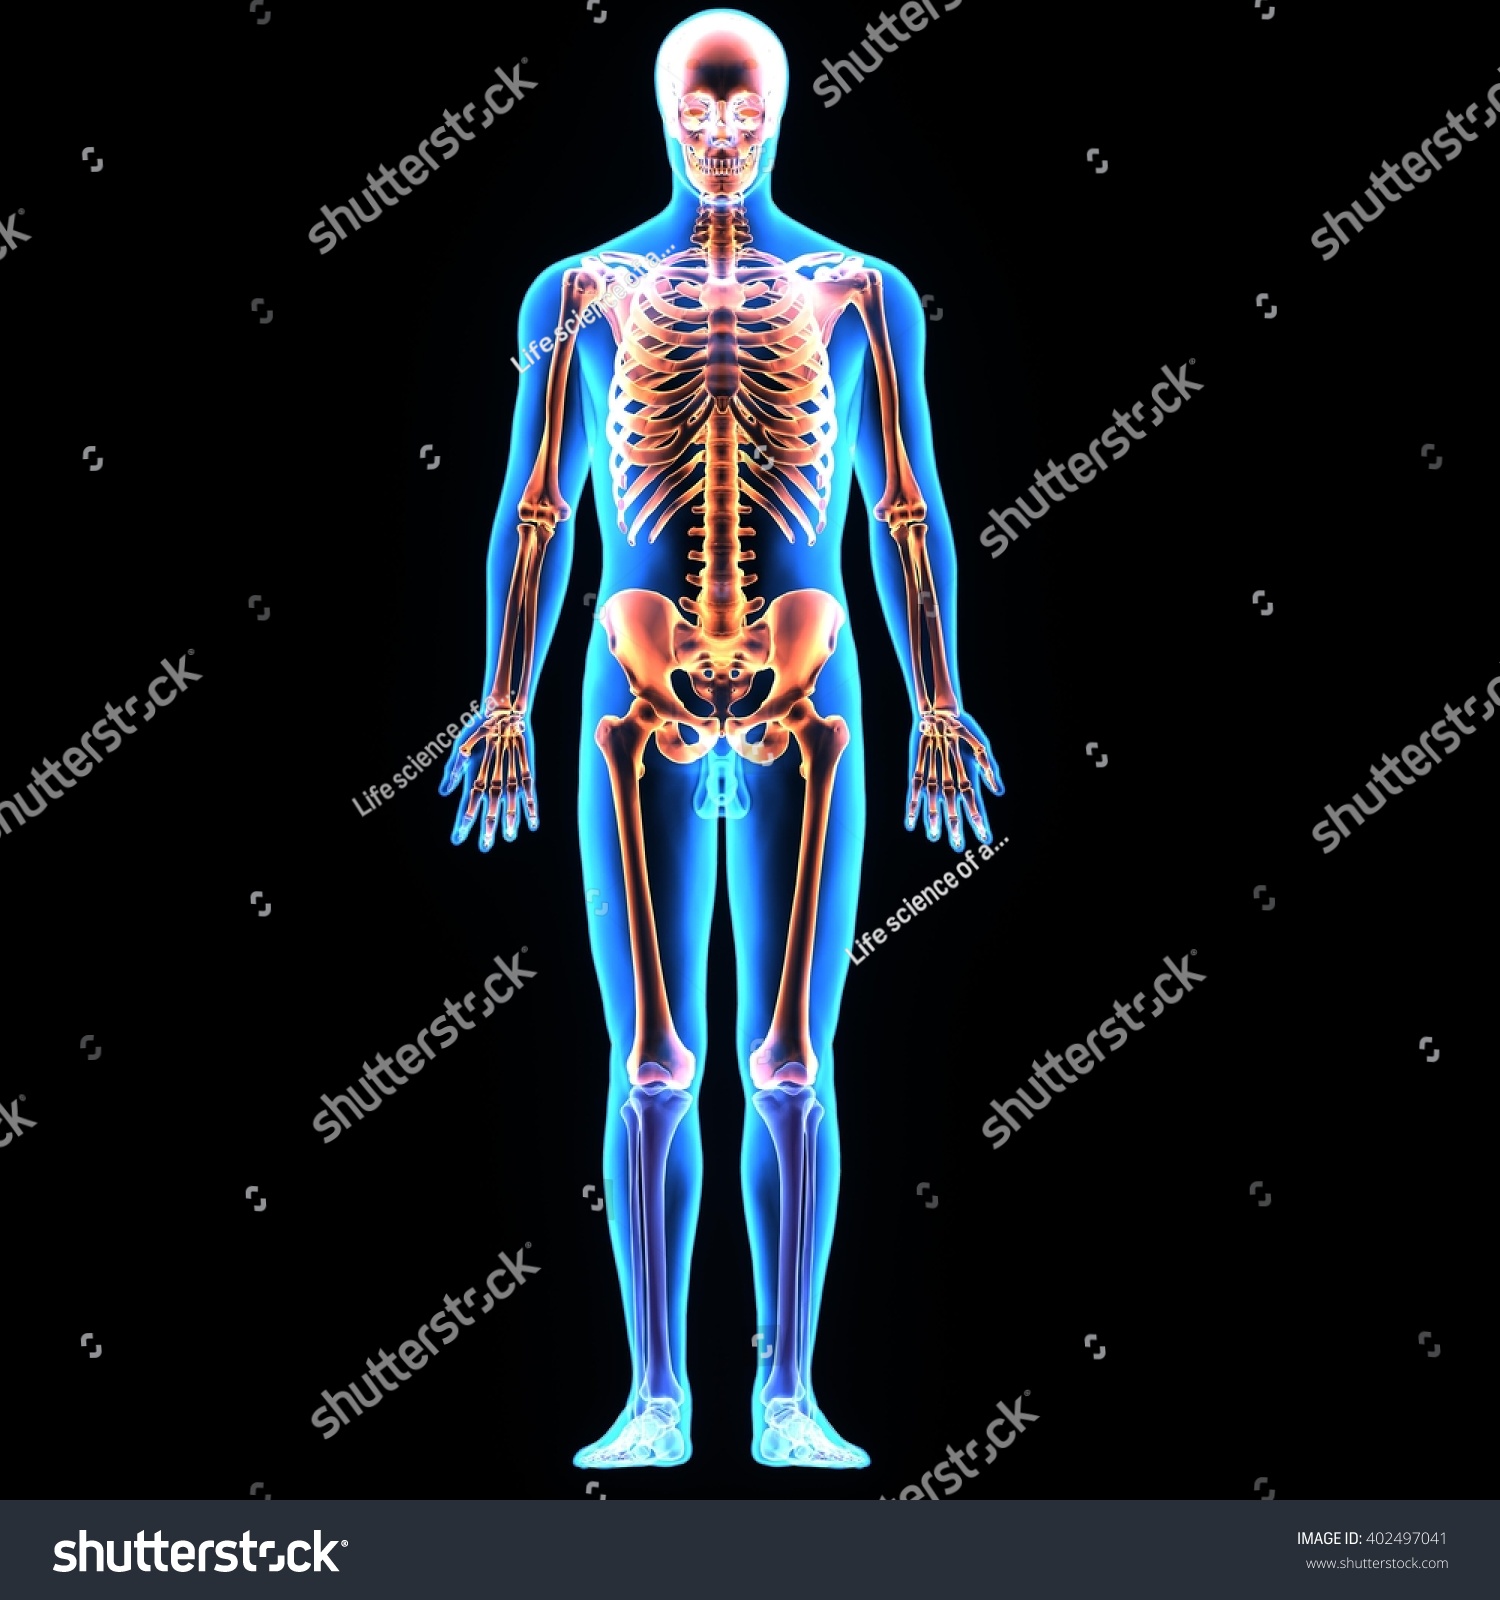 Human Anatomybones And Organs